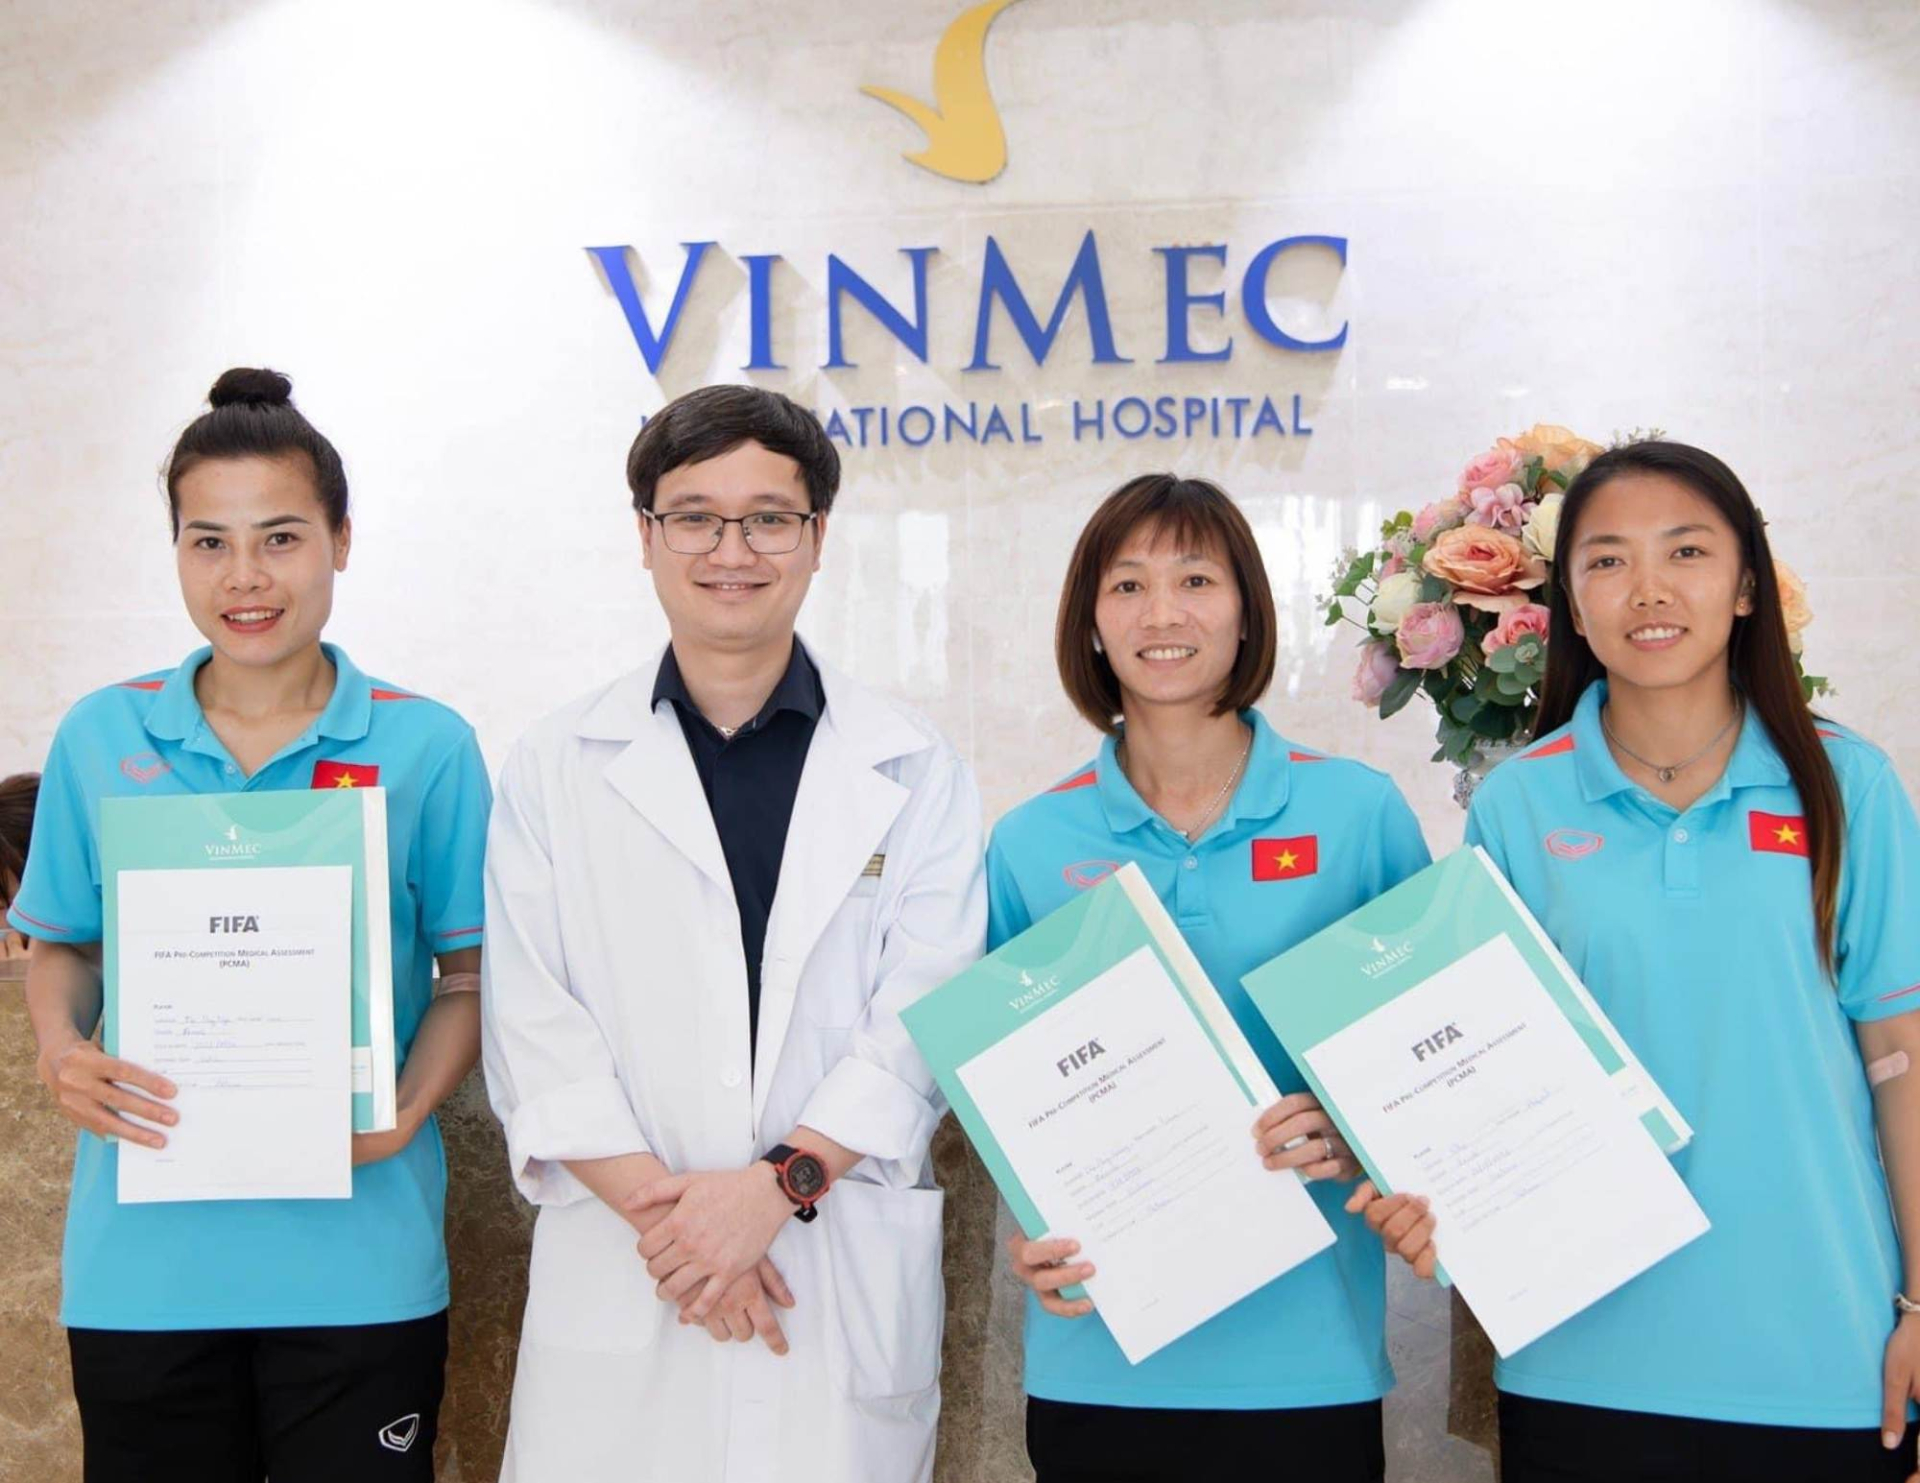 Anh 1 - Các cầu thủ của tuyển nữ Việt Nam khám sức khỏe theo bộ tiêu chuẩn đánh giá của FIFA trước khi lên đường tham dự World Cup